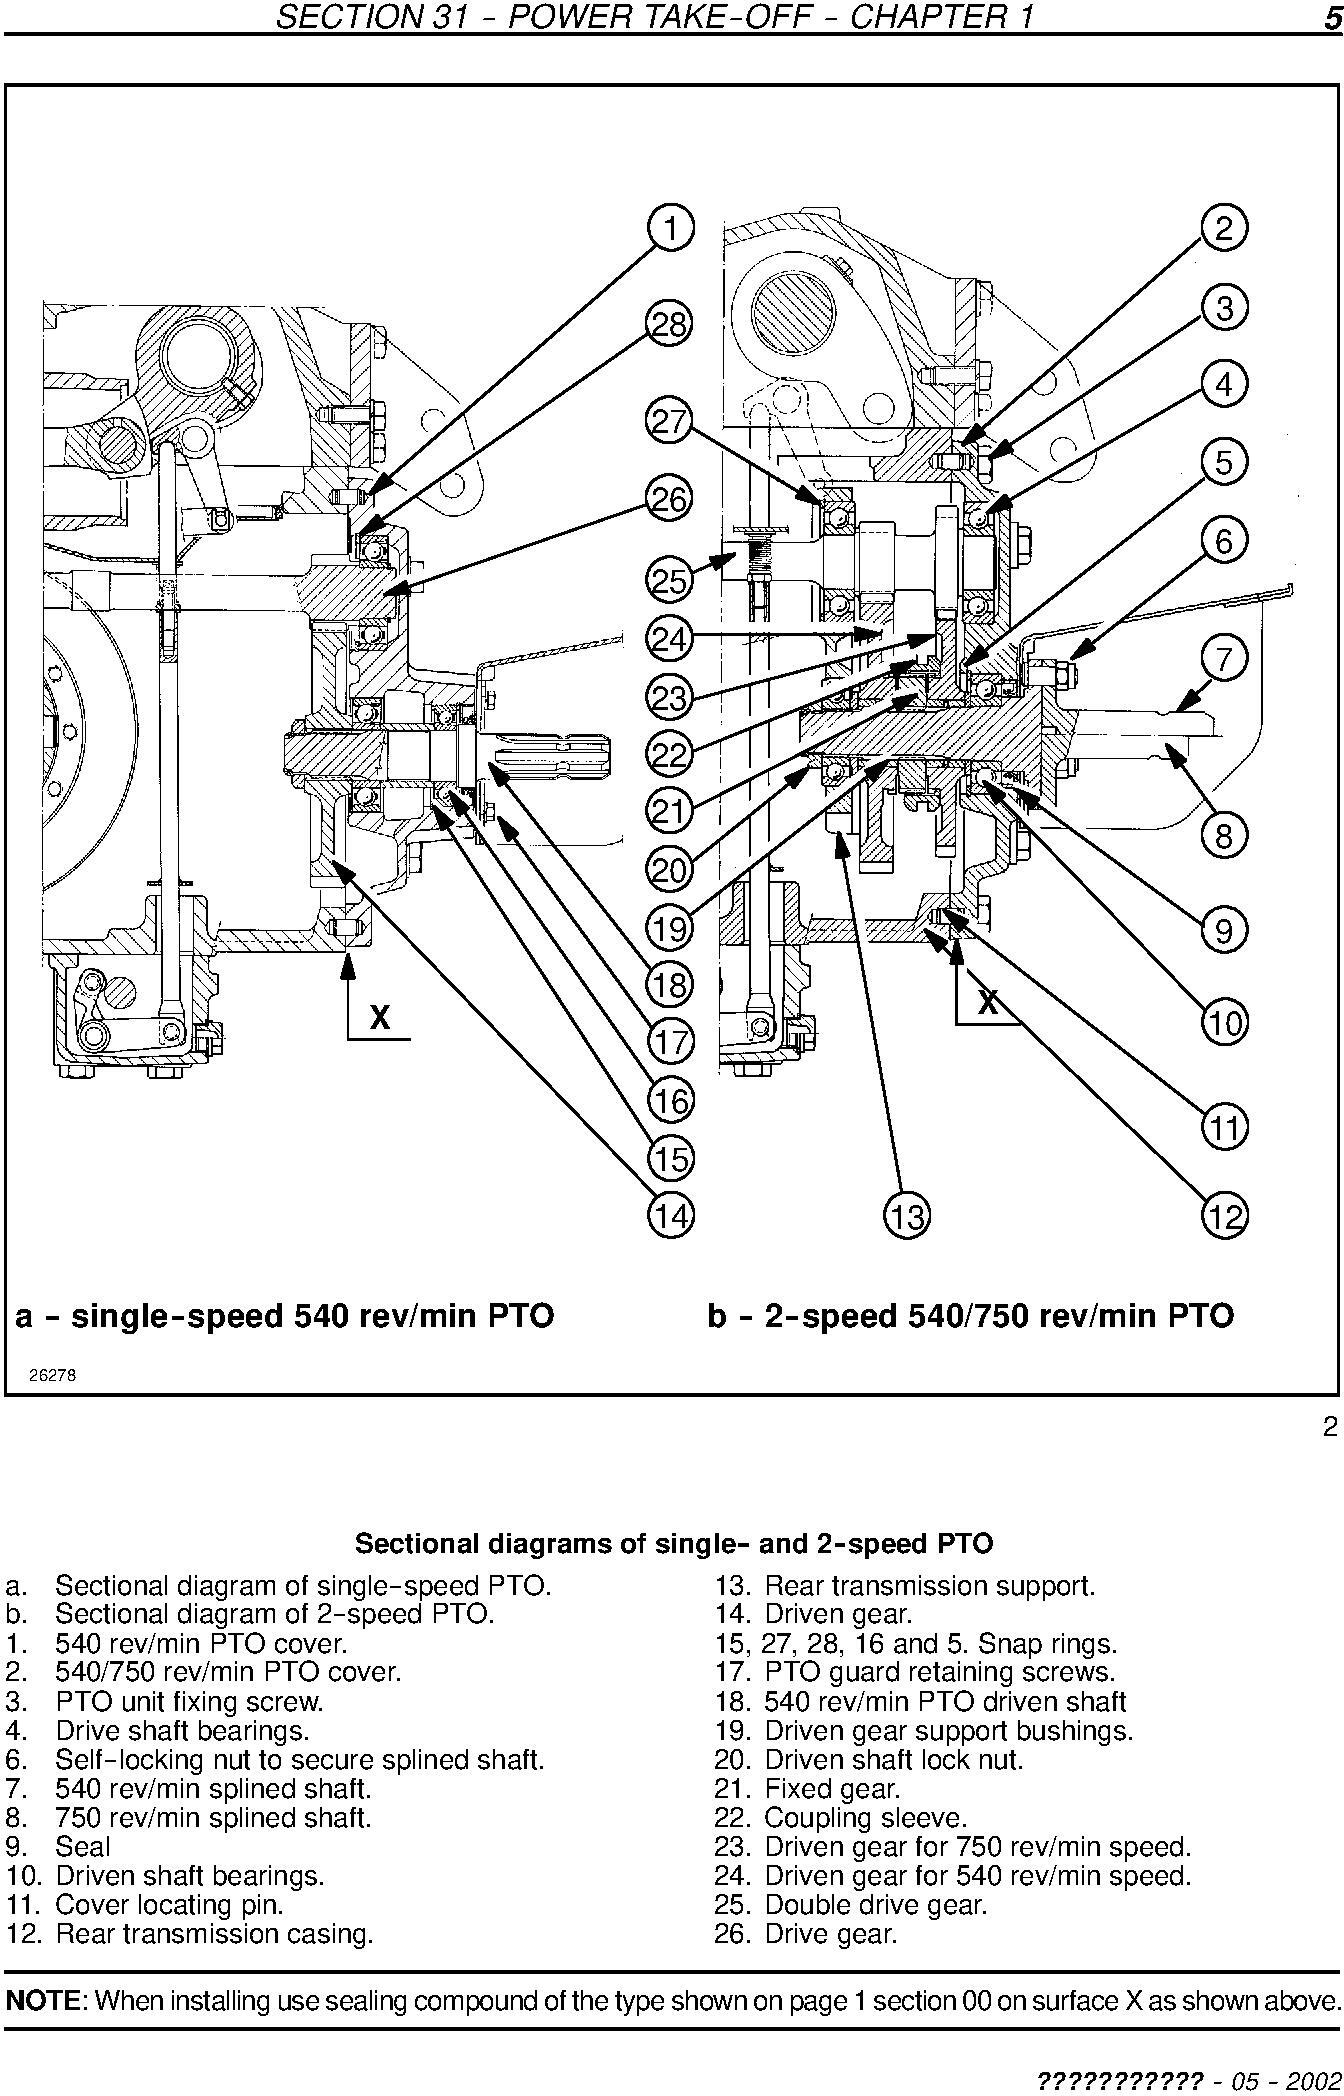 New Holland TD60, TD70, TD80, TD90, TD95 Straddle Mount Model Tractors Service Manual - 3